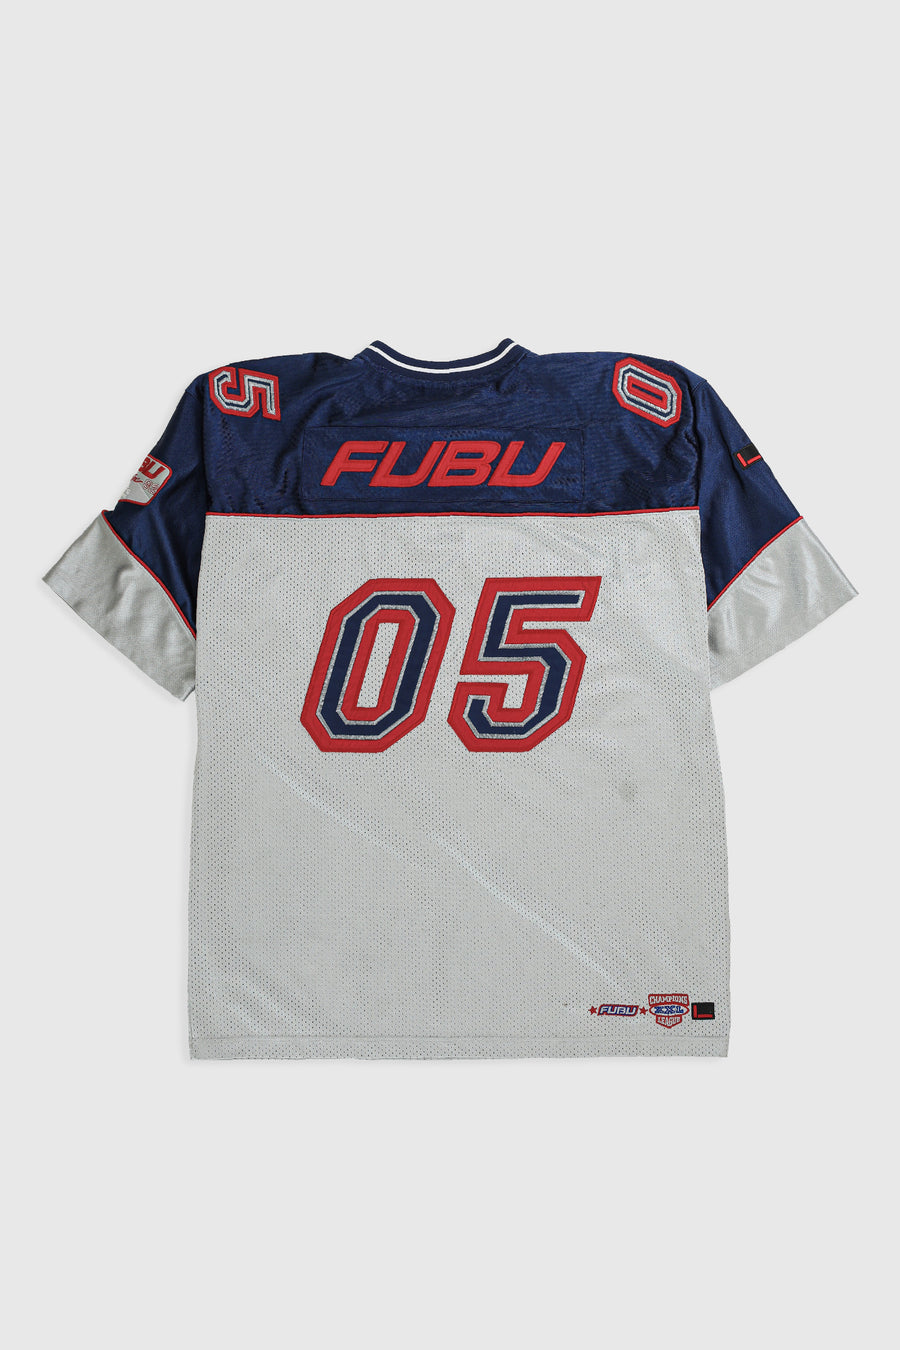 Vintage Fubu Football Jersey - XL